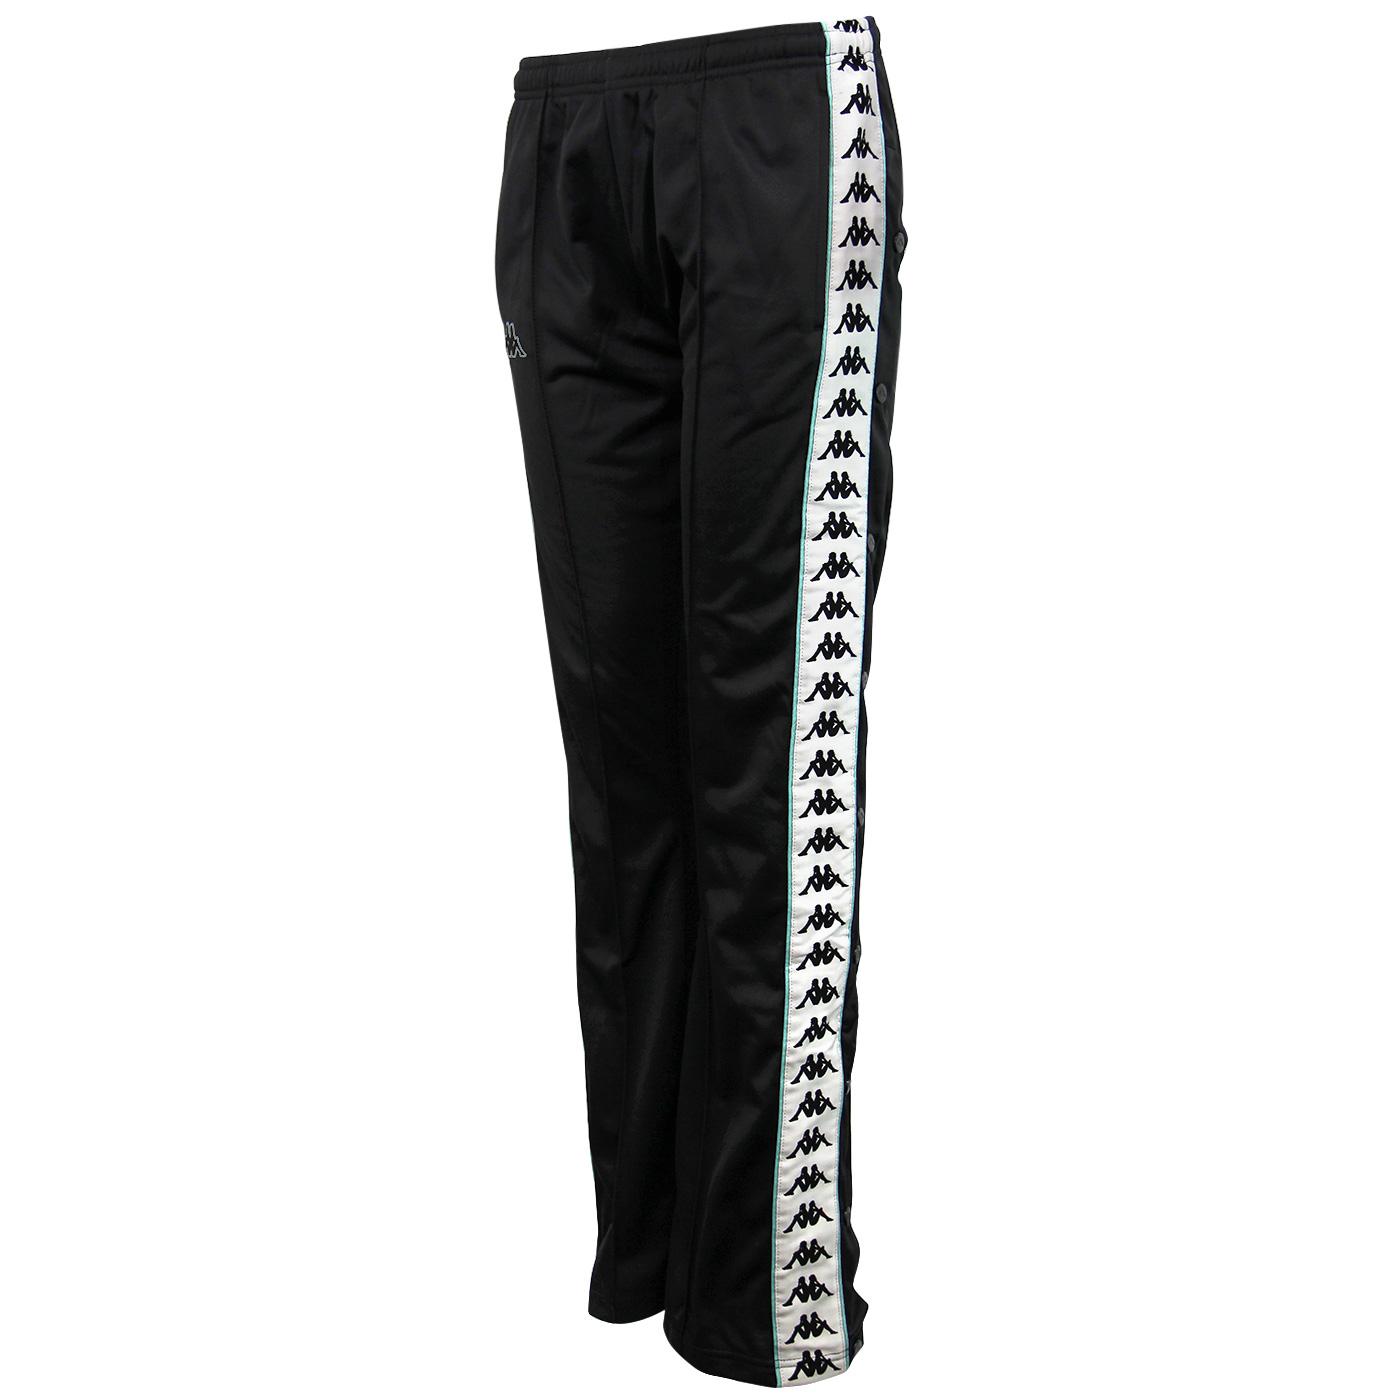 Buy Green Trousers  Pants for Women by Kappa Online  Ajiocom